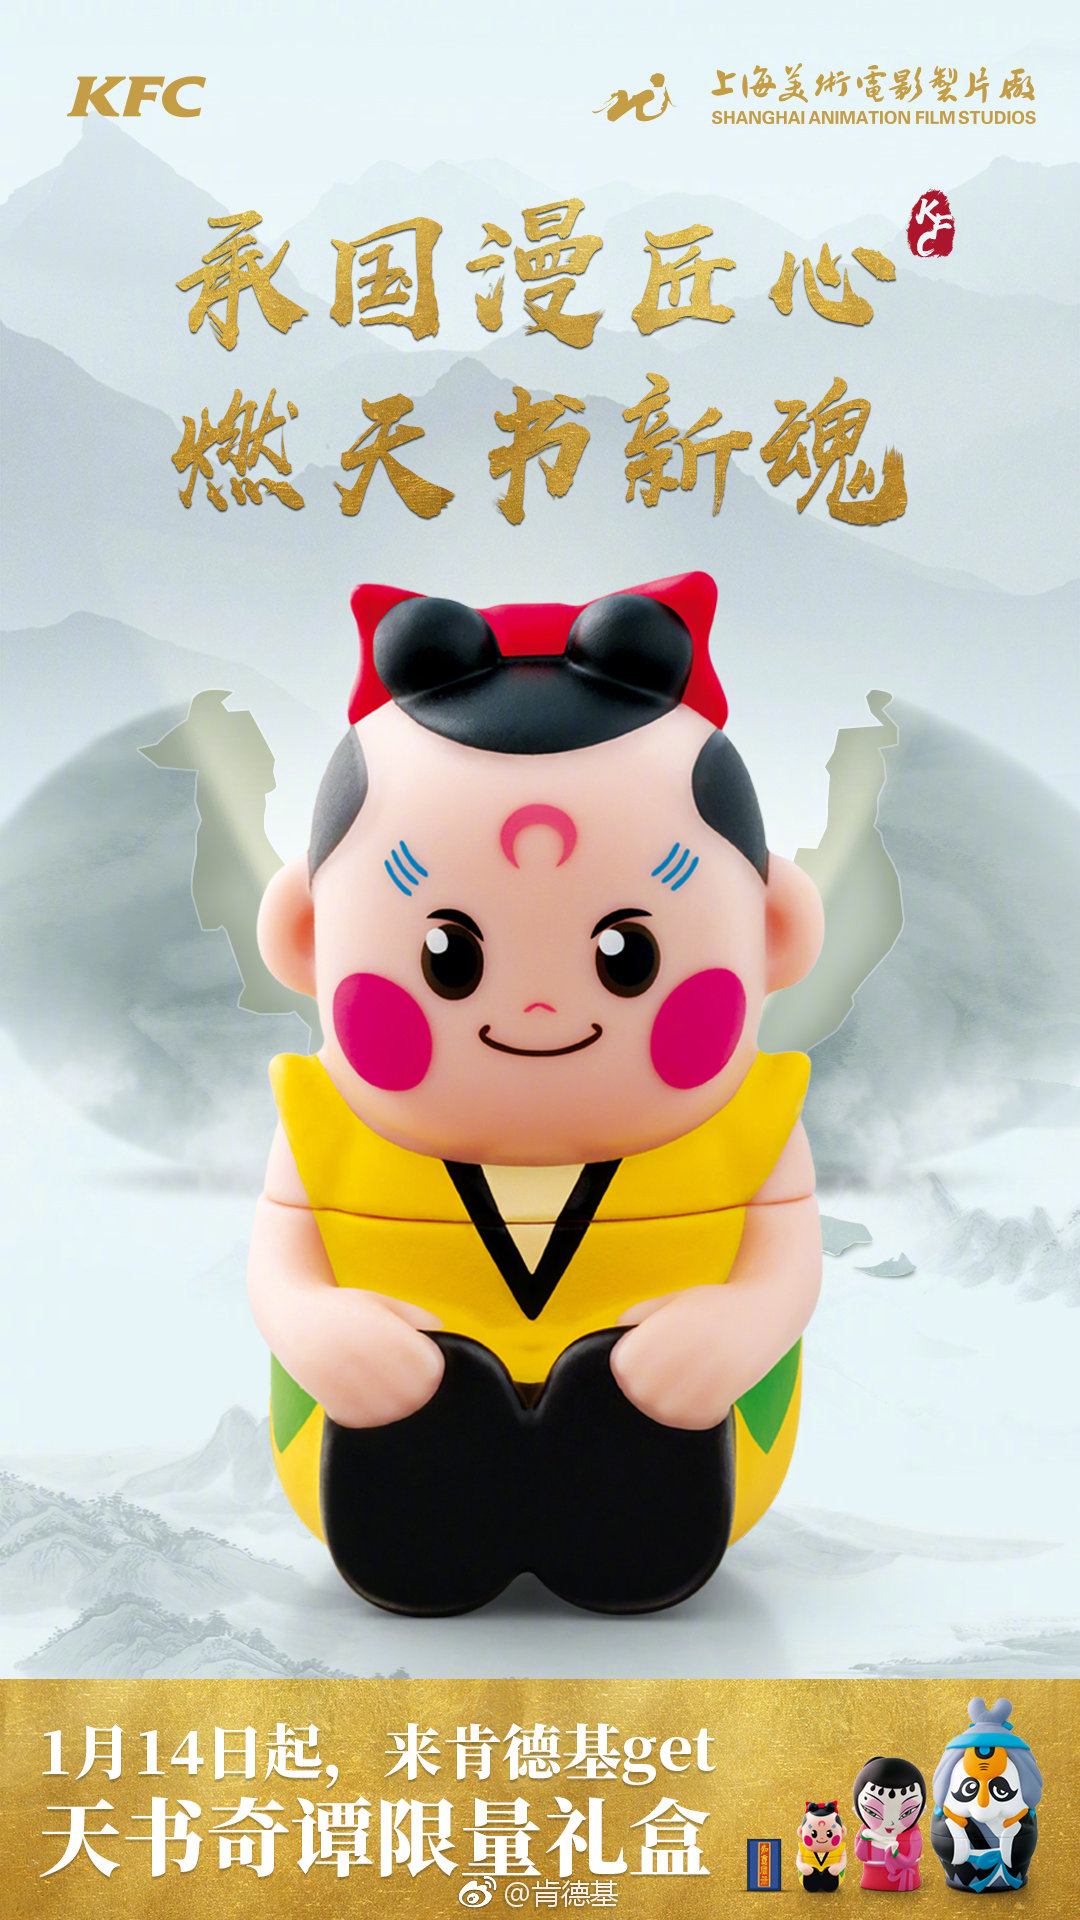 KFC携手上海美影 推出《天书奇谭》典藏套娃玩具礼盒